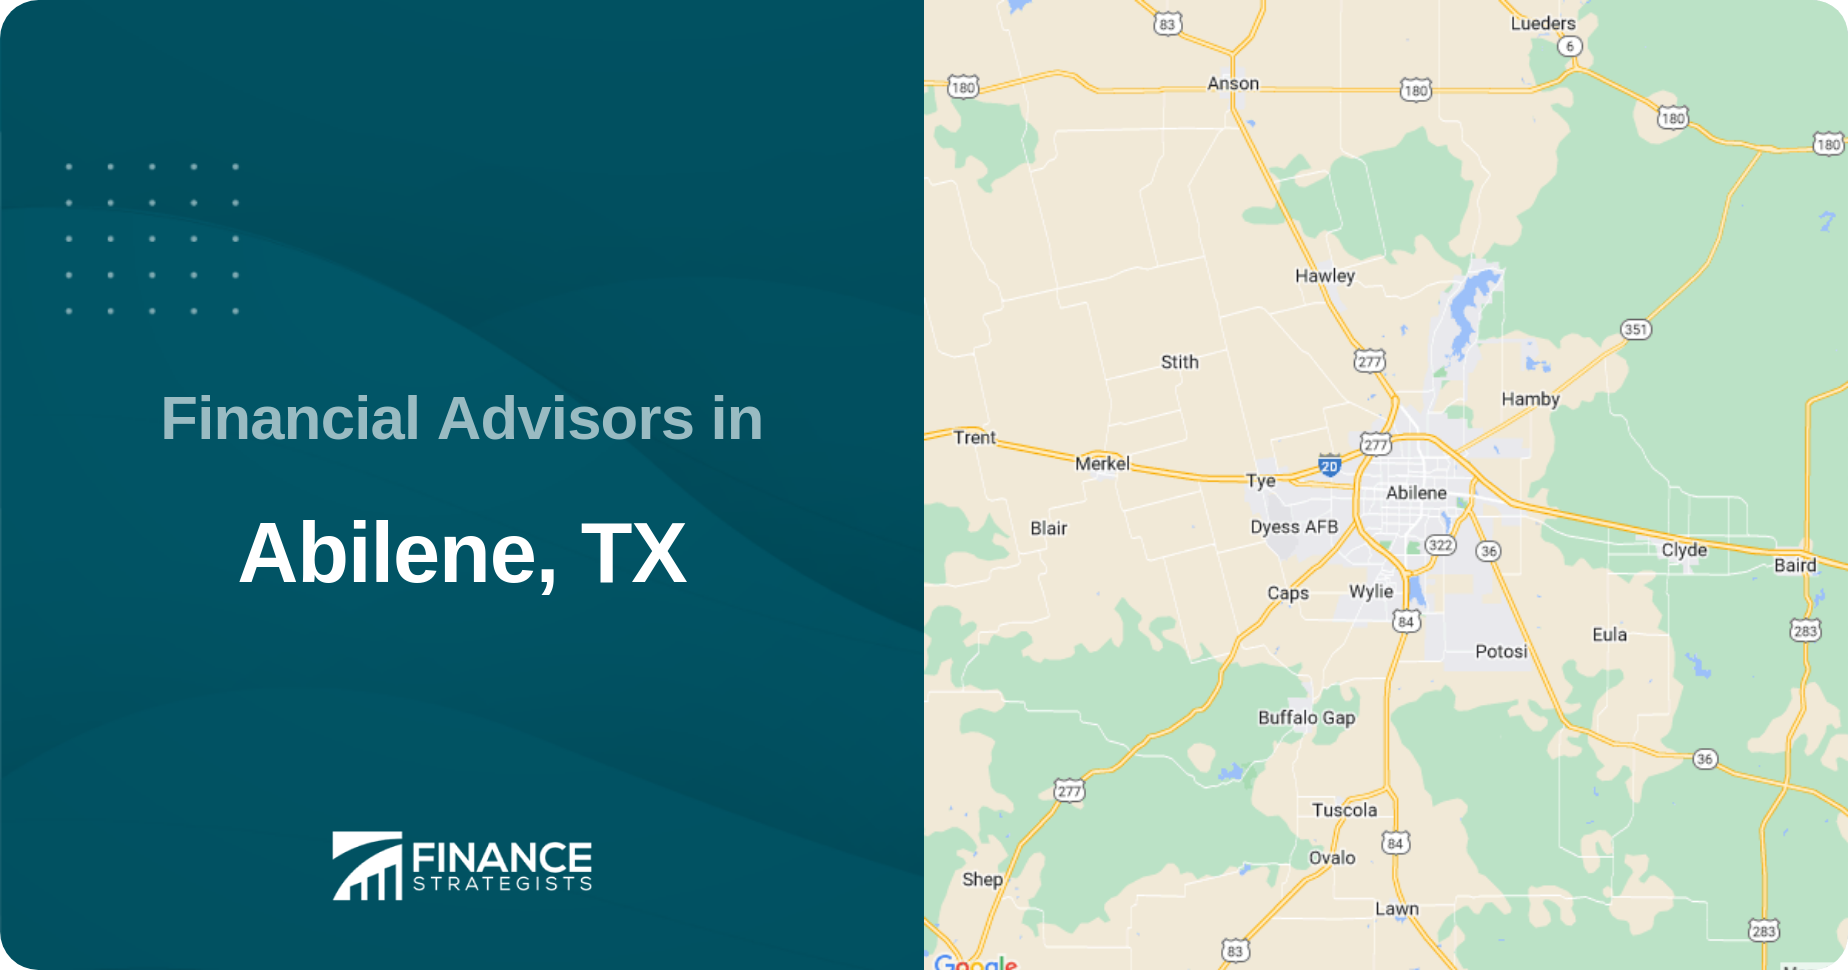 Financial Advisors in Abilene, TX